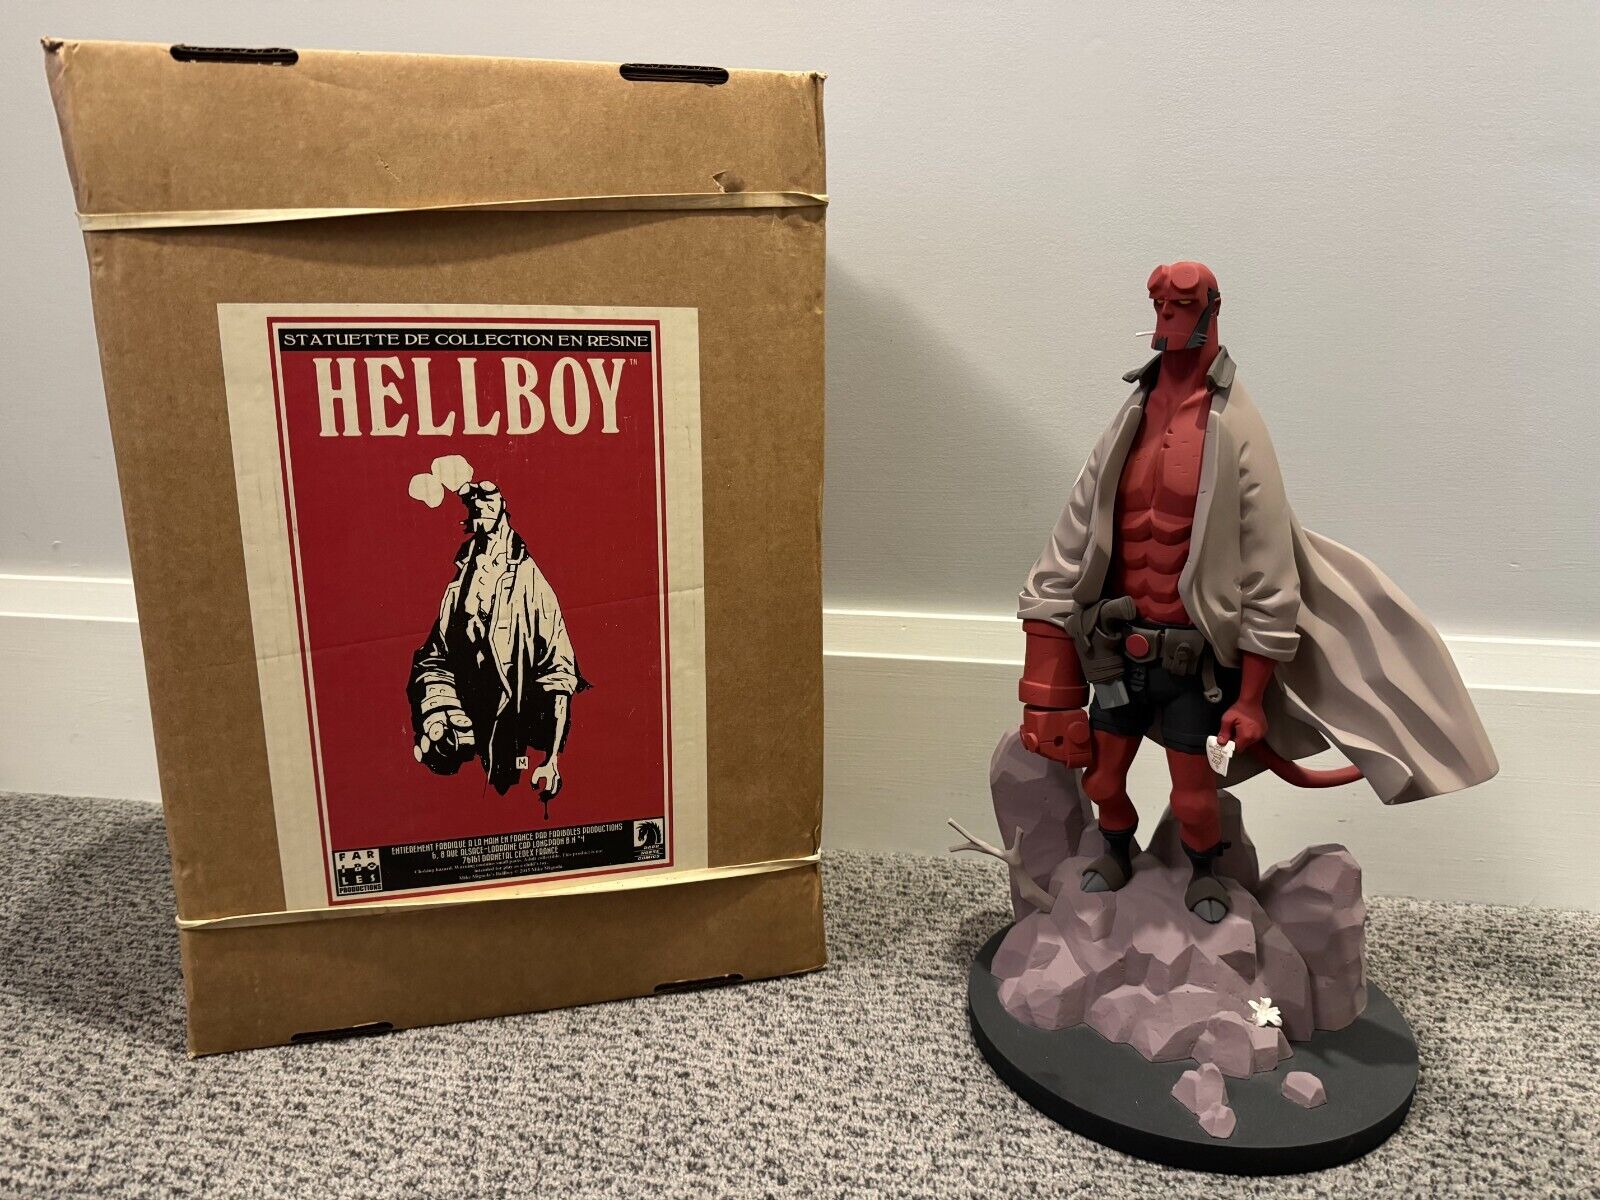 Fariboles Hellboy Statue V1 2014 w Original Print and Box - SUPER RARE 1/6 Scale